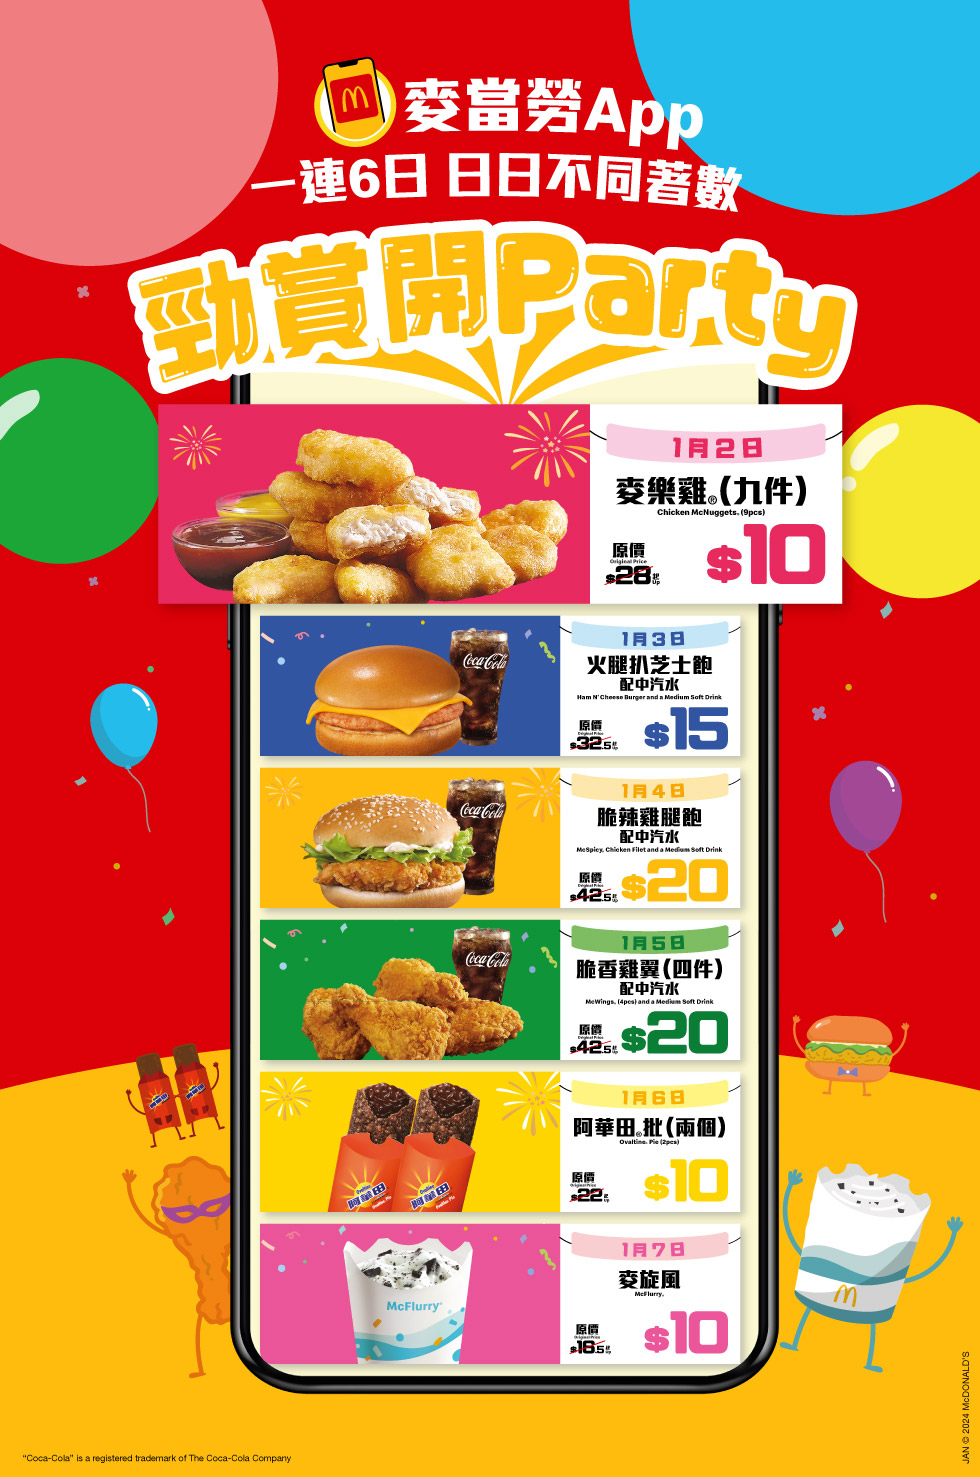 McDonald’s App